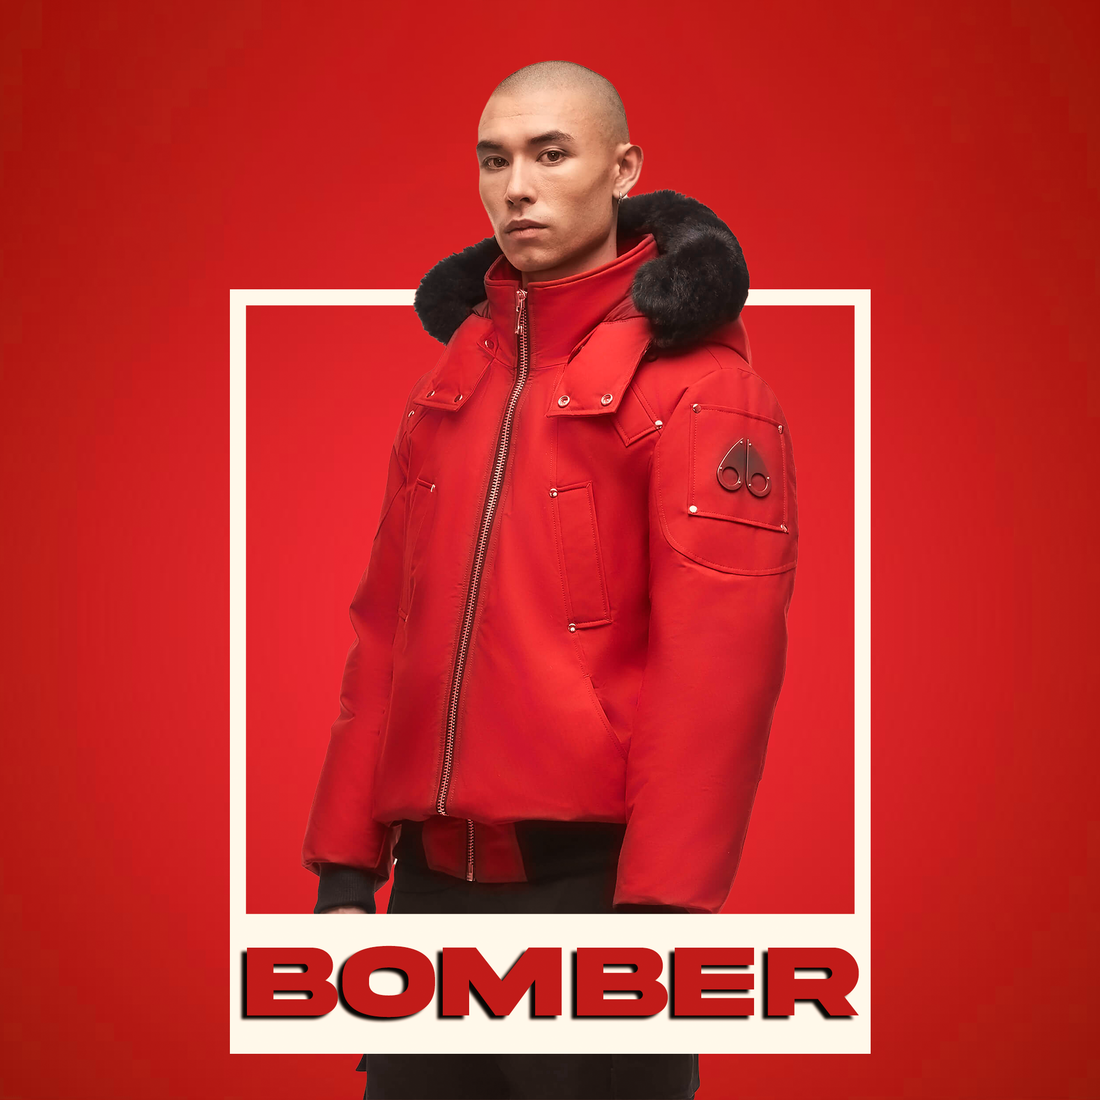 Bomber Jackets